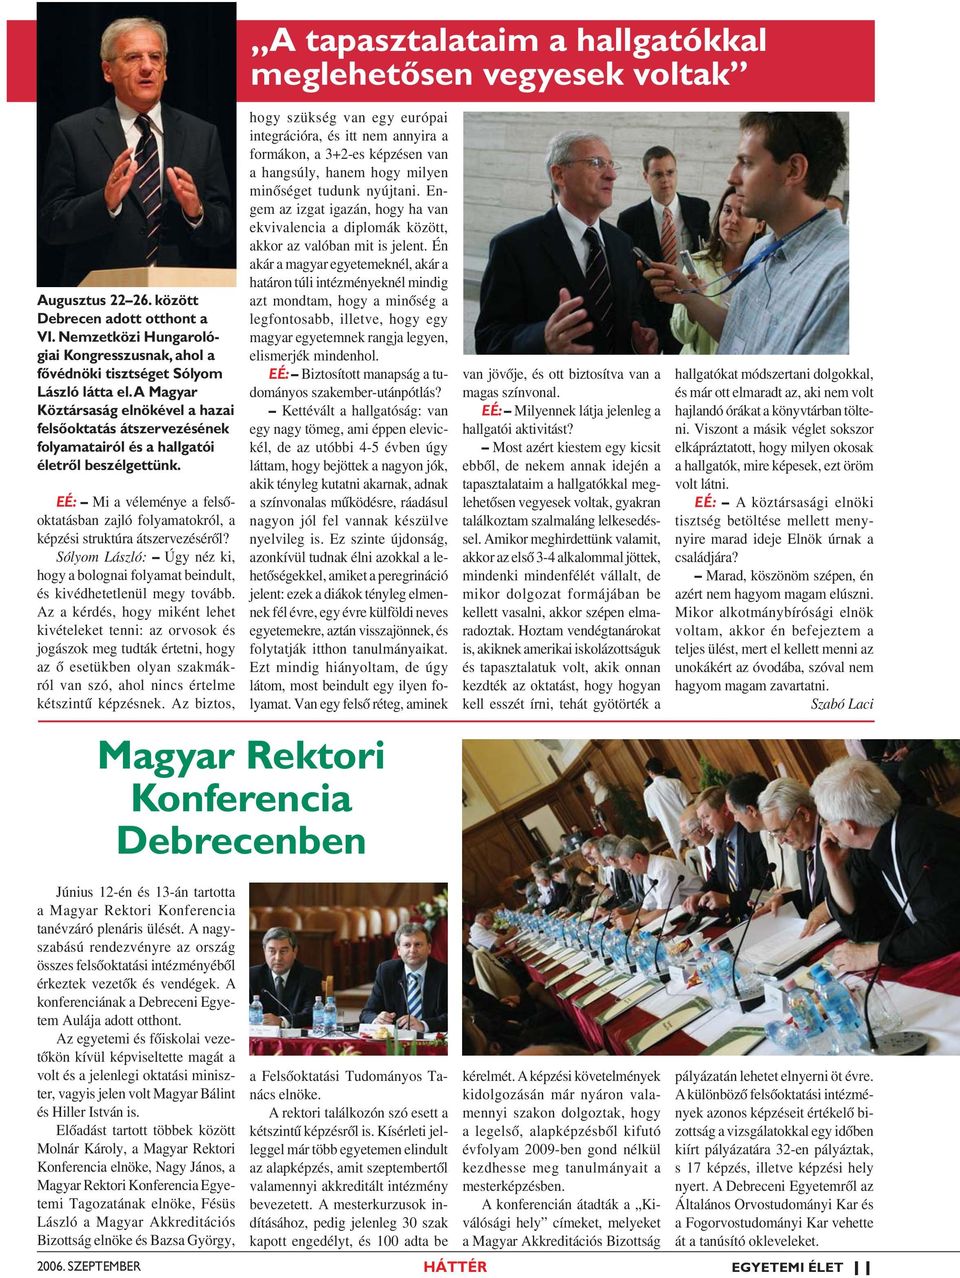 A Magyar Köztársaság elnökével a hazai felsőoktatás átszervezésének folyamatairól és a hallgatói életről beszélgettünk.